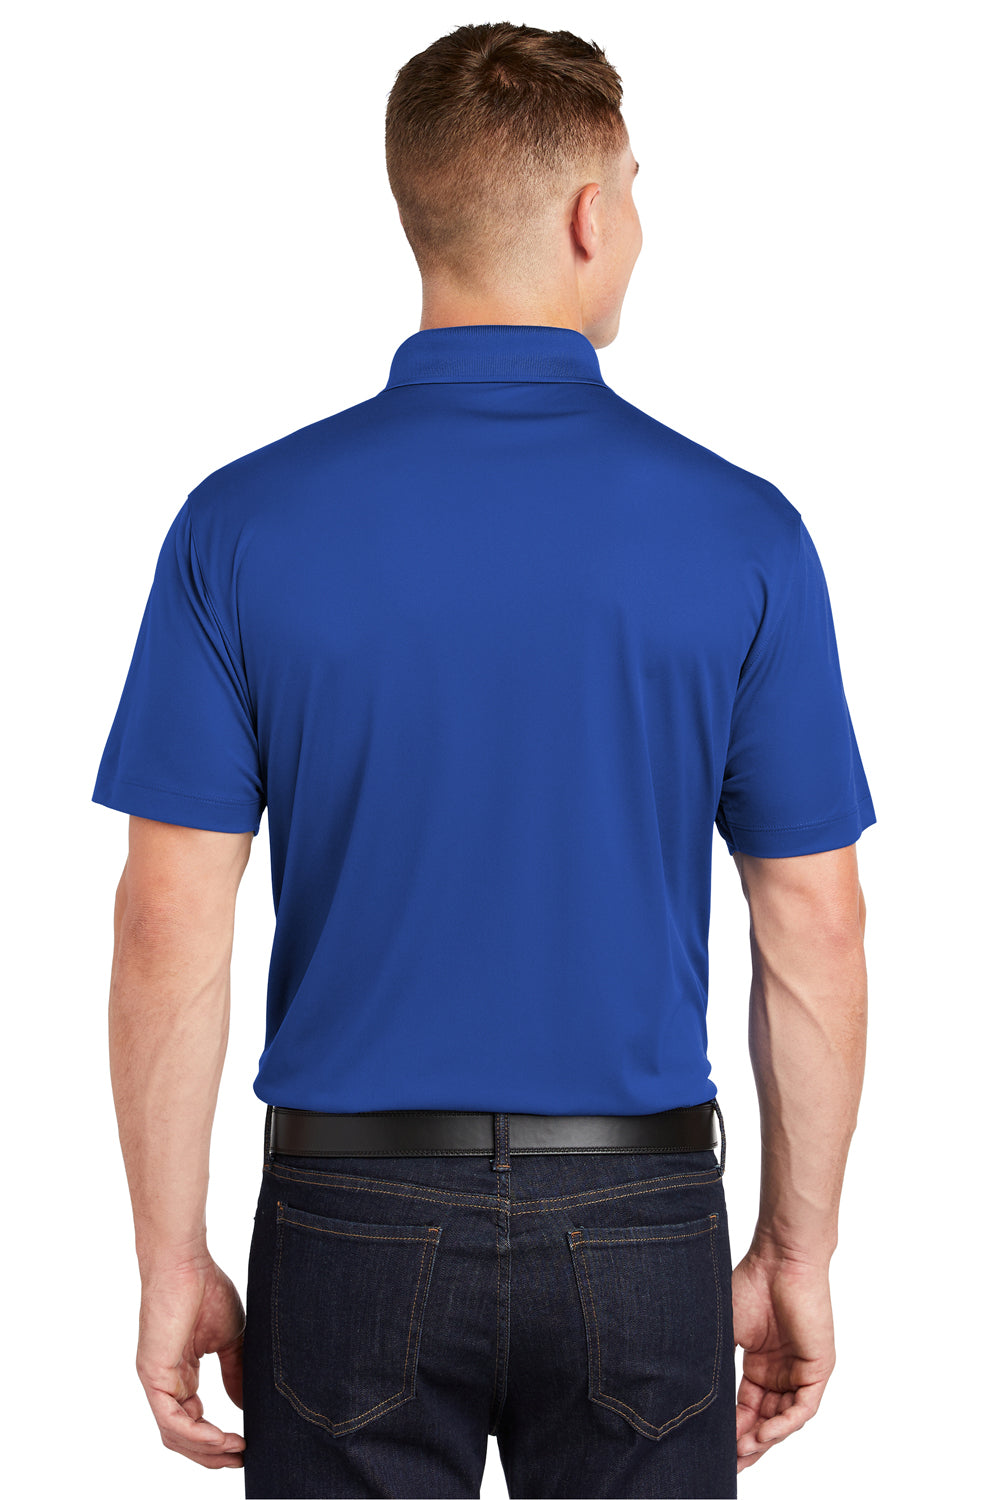 Sport-Tek ST650 Mens Sport-Wick Moisture Wicking Short Sleeve Polo Shirt Royal Blue Back